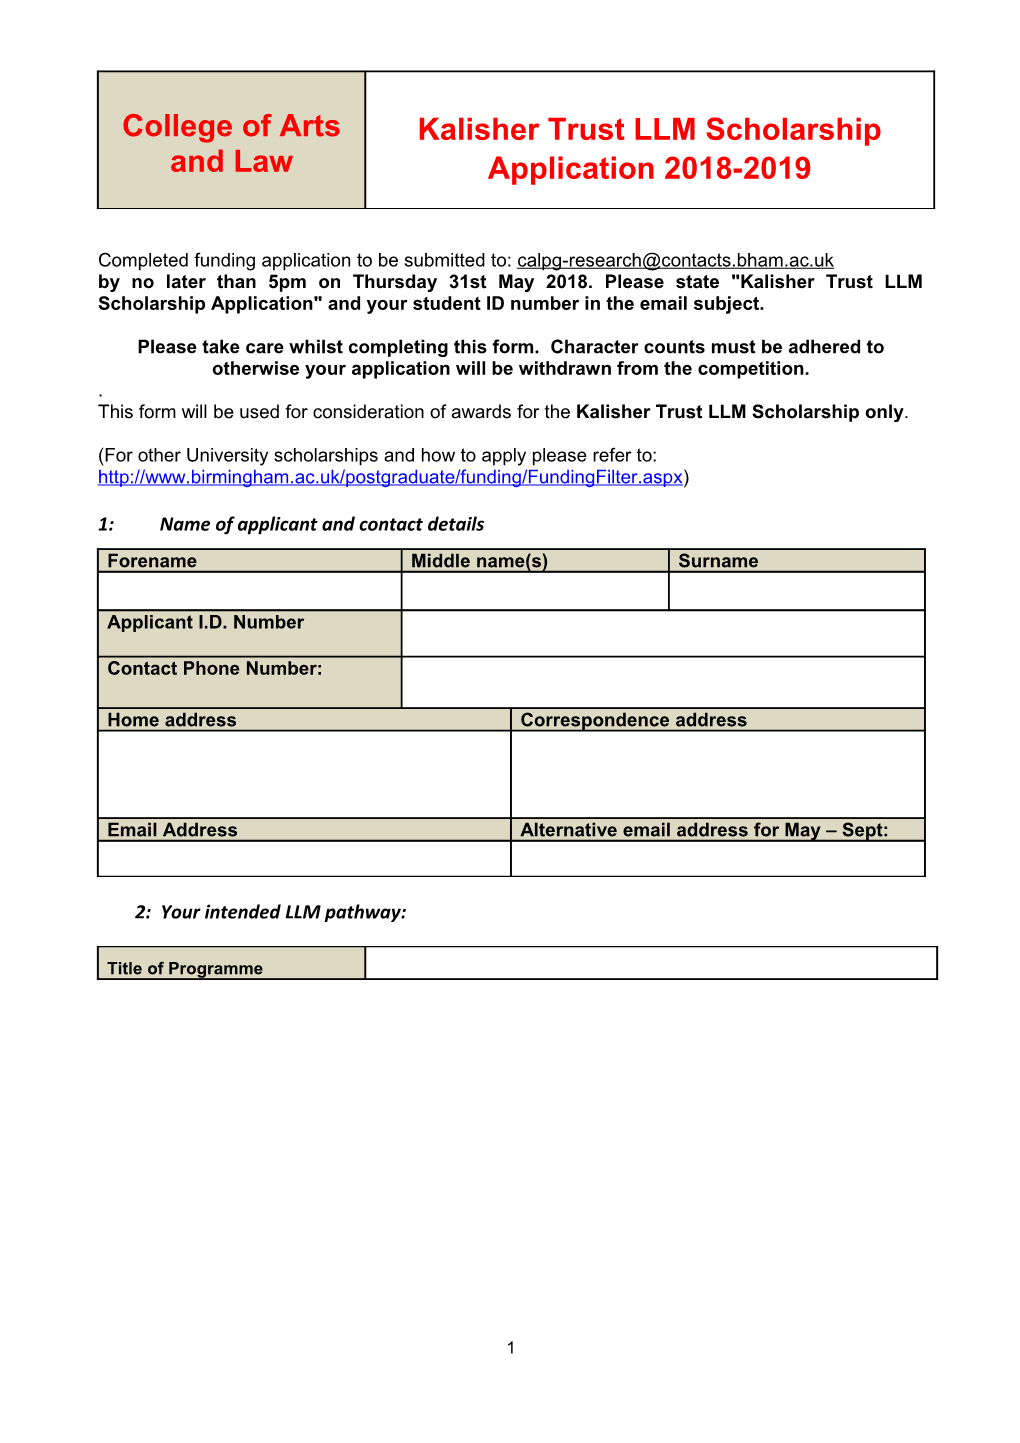 Sample Doctoral Award Scheme Application Form